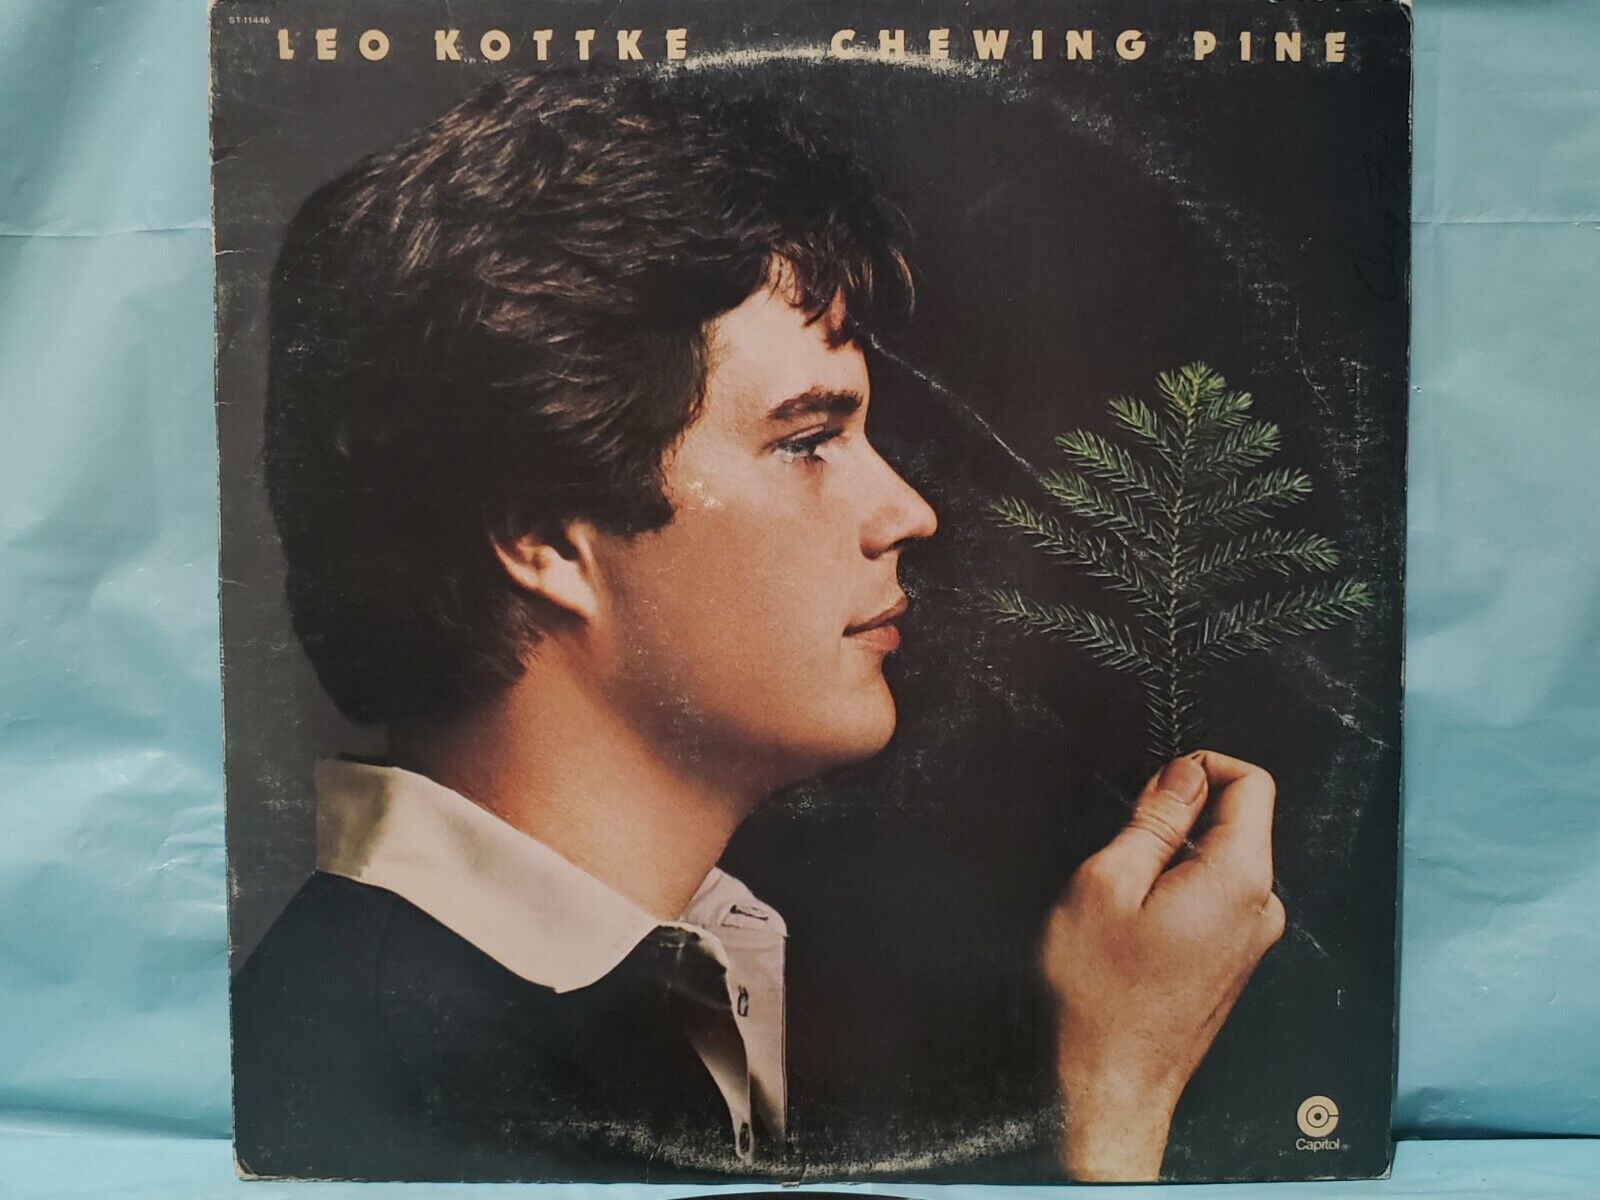 LEO KOTTKE - CHEWING PINE - VINTAGE VINYL LP 